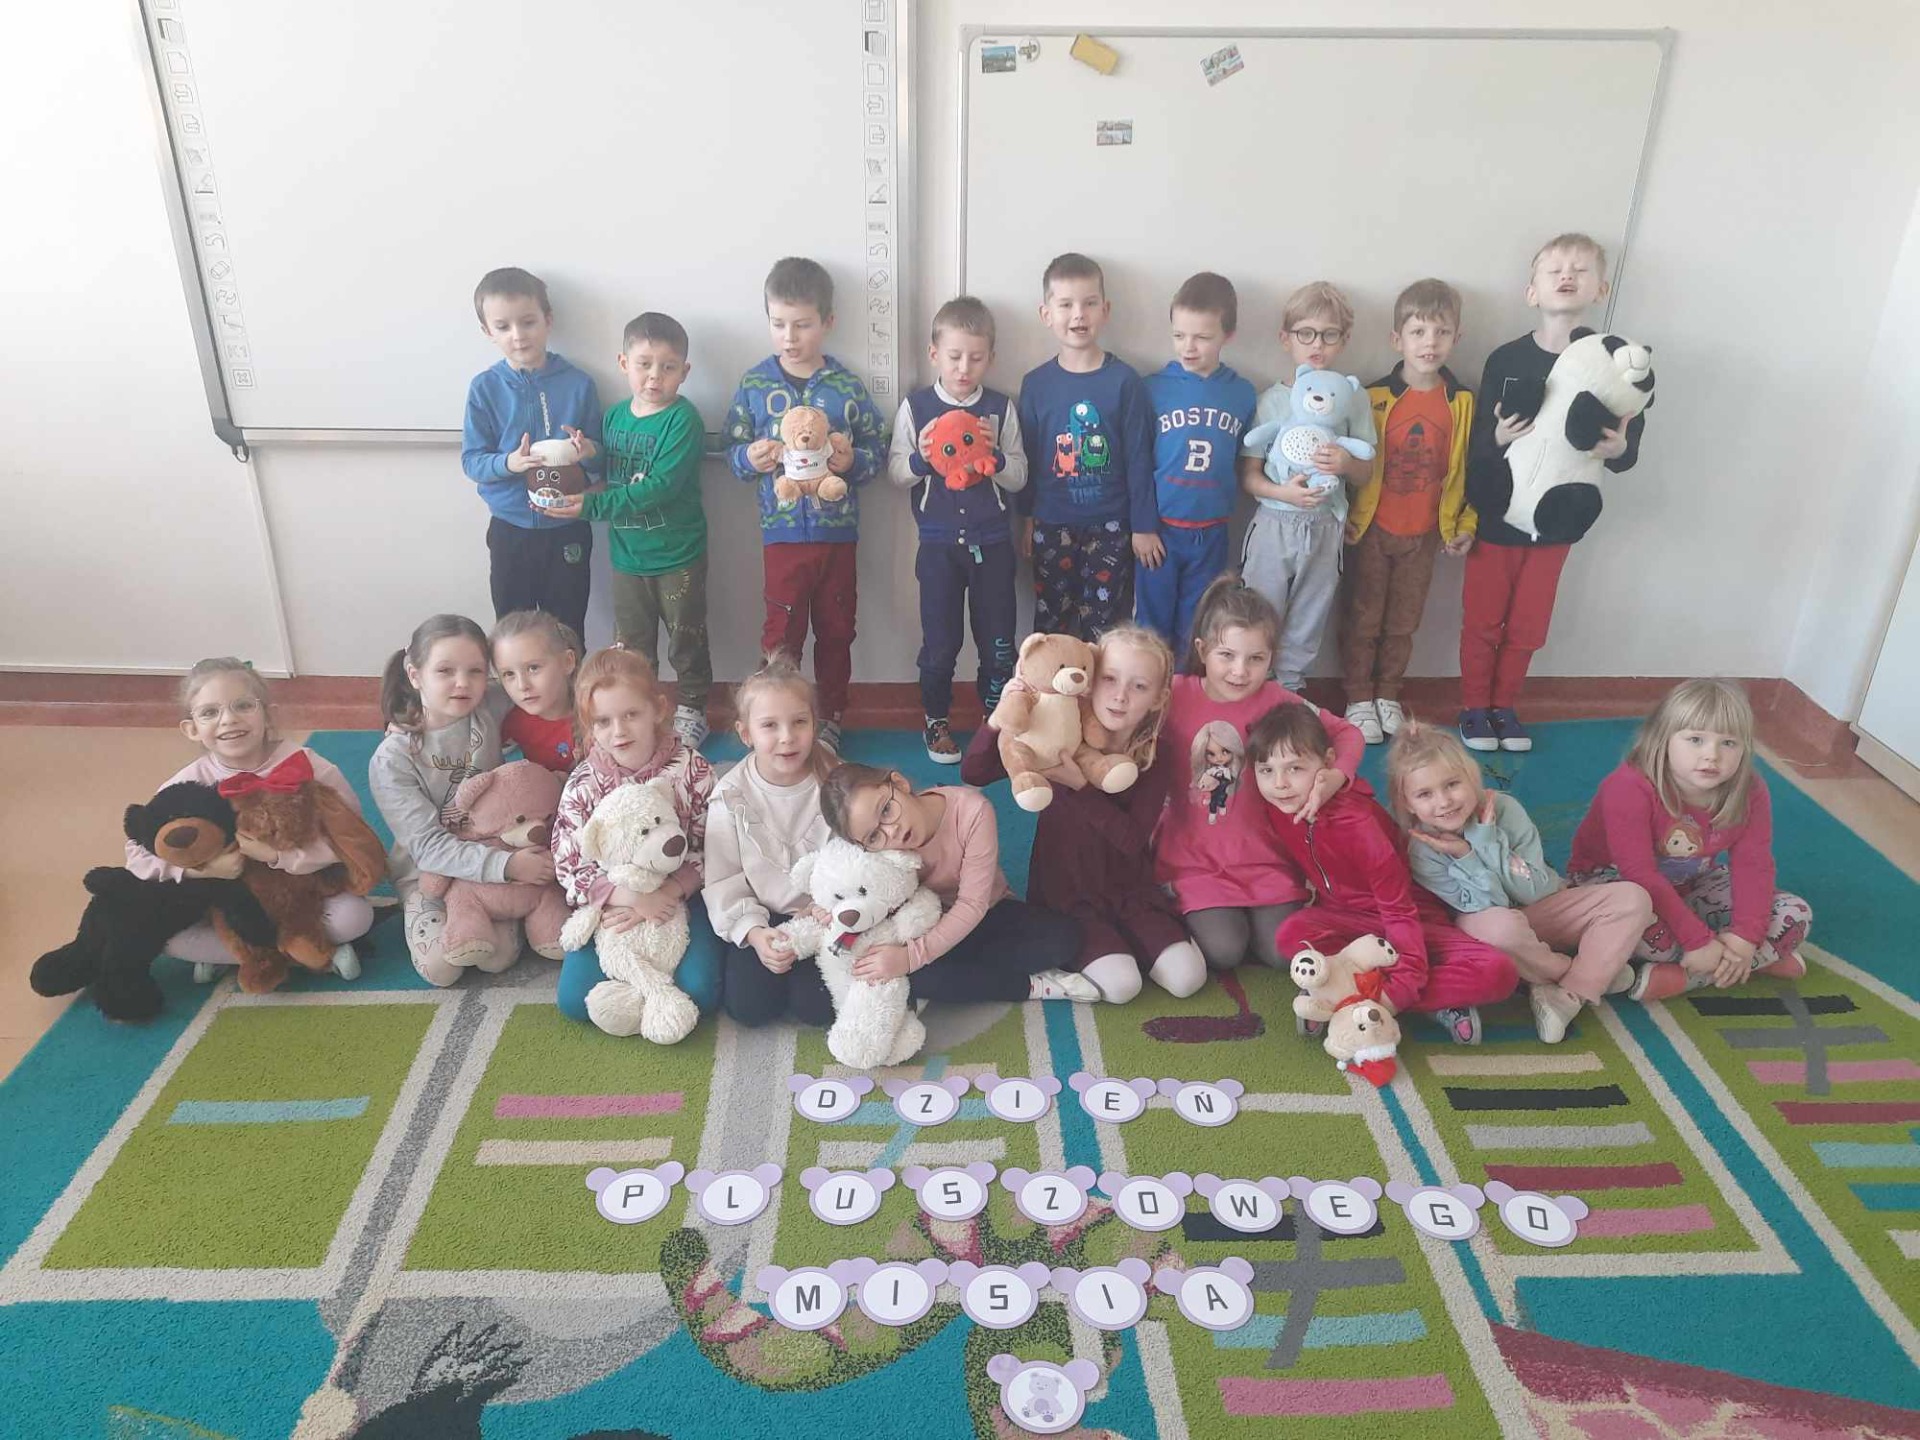 Dzieci z oddziałów przedszkolnych Szkoły Podstawowej Nr 2 im. Mikołaja Kopernika w Olecku z maskotkami w Światowym Dniu Pluszowego Misia